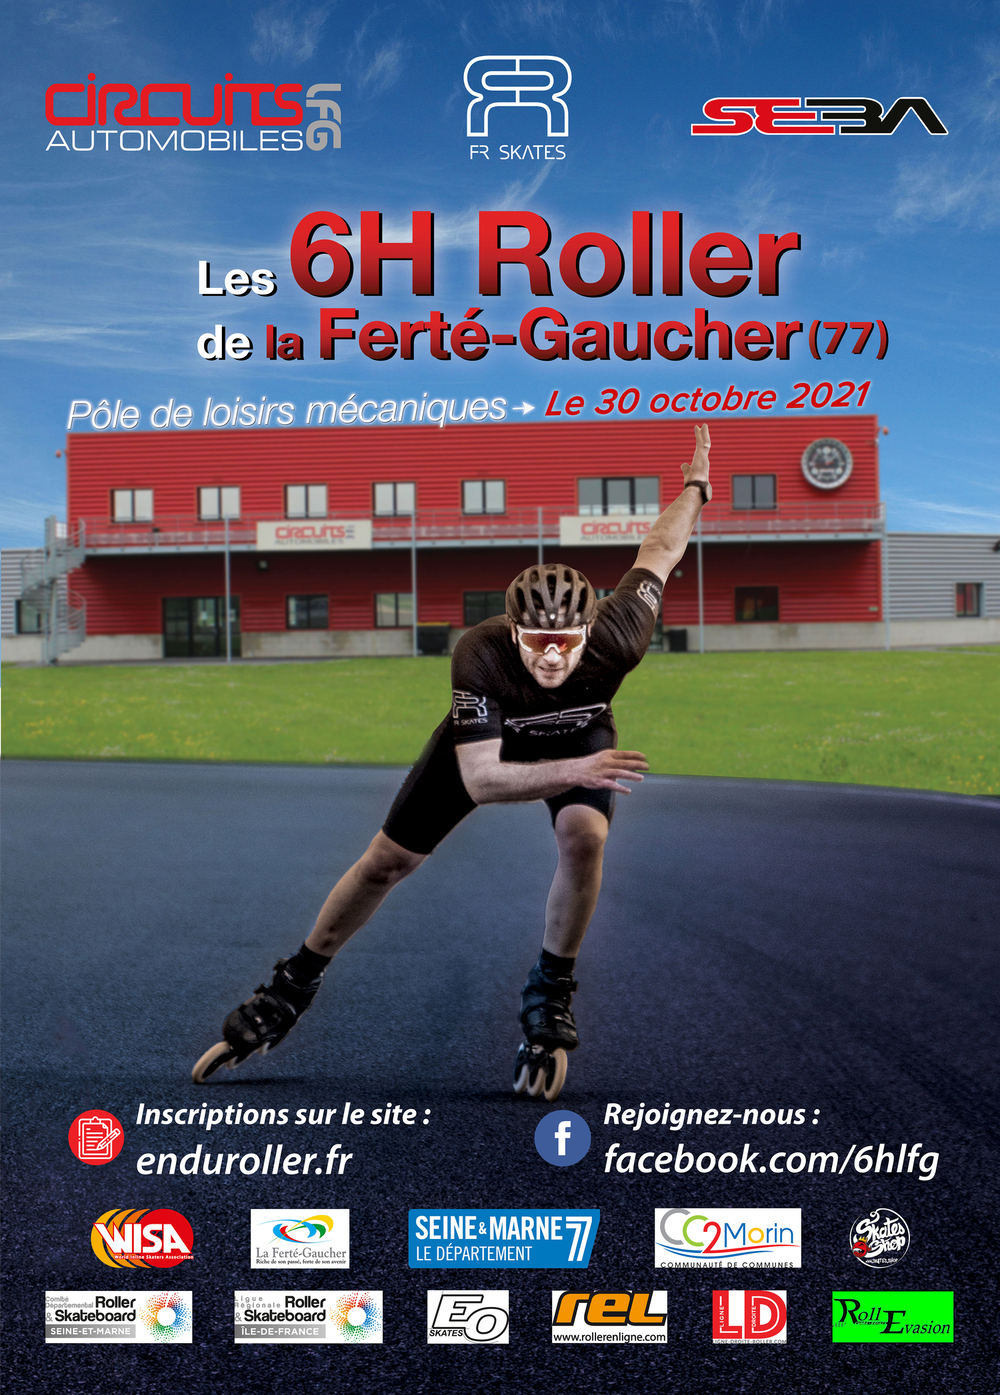 Les 6H Roller de La Ferté-Gaucher